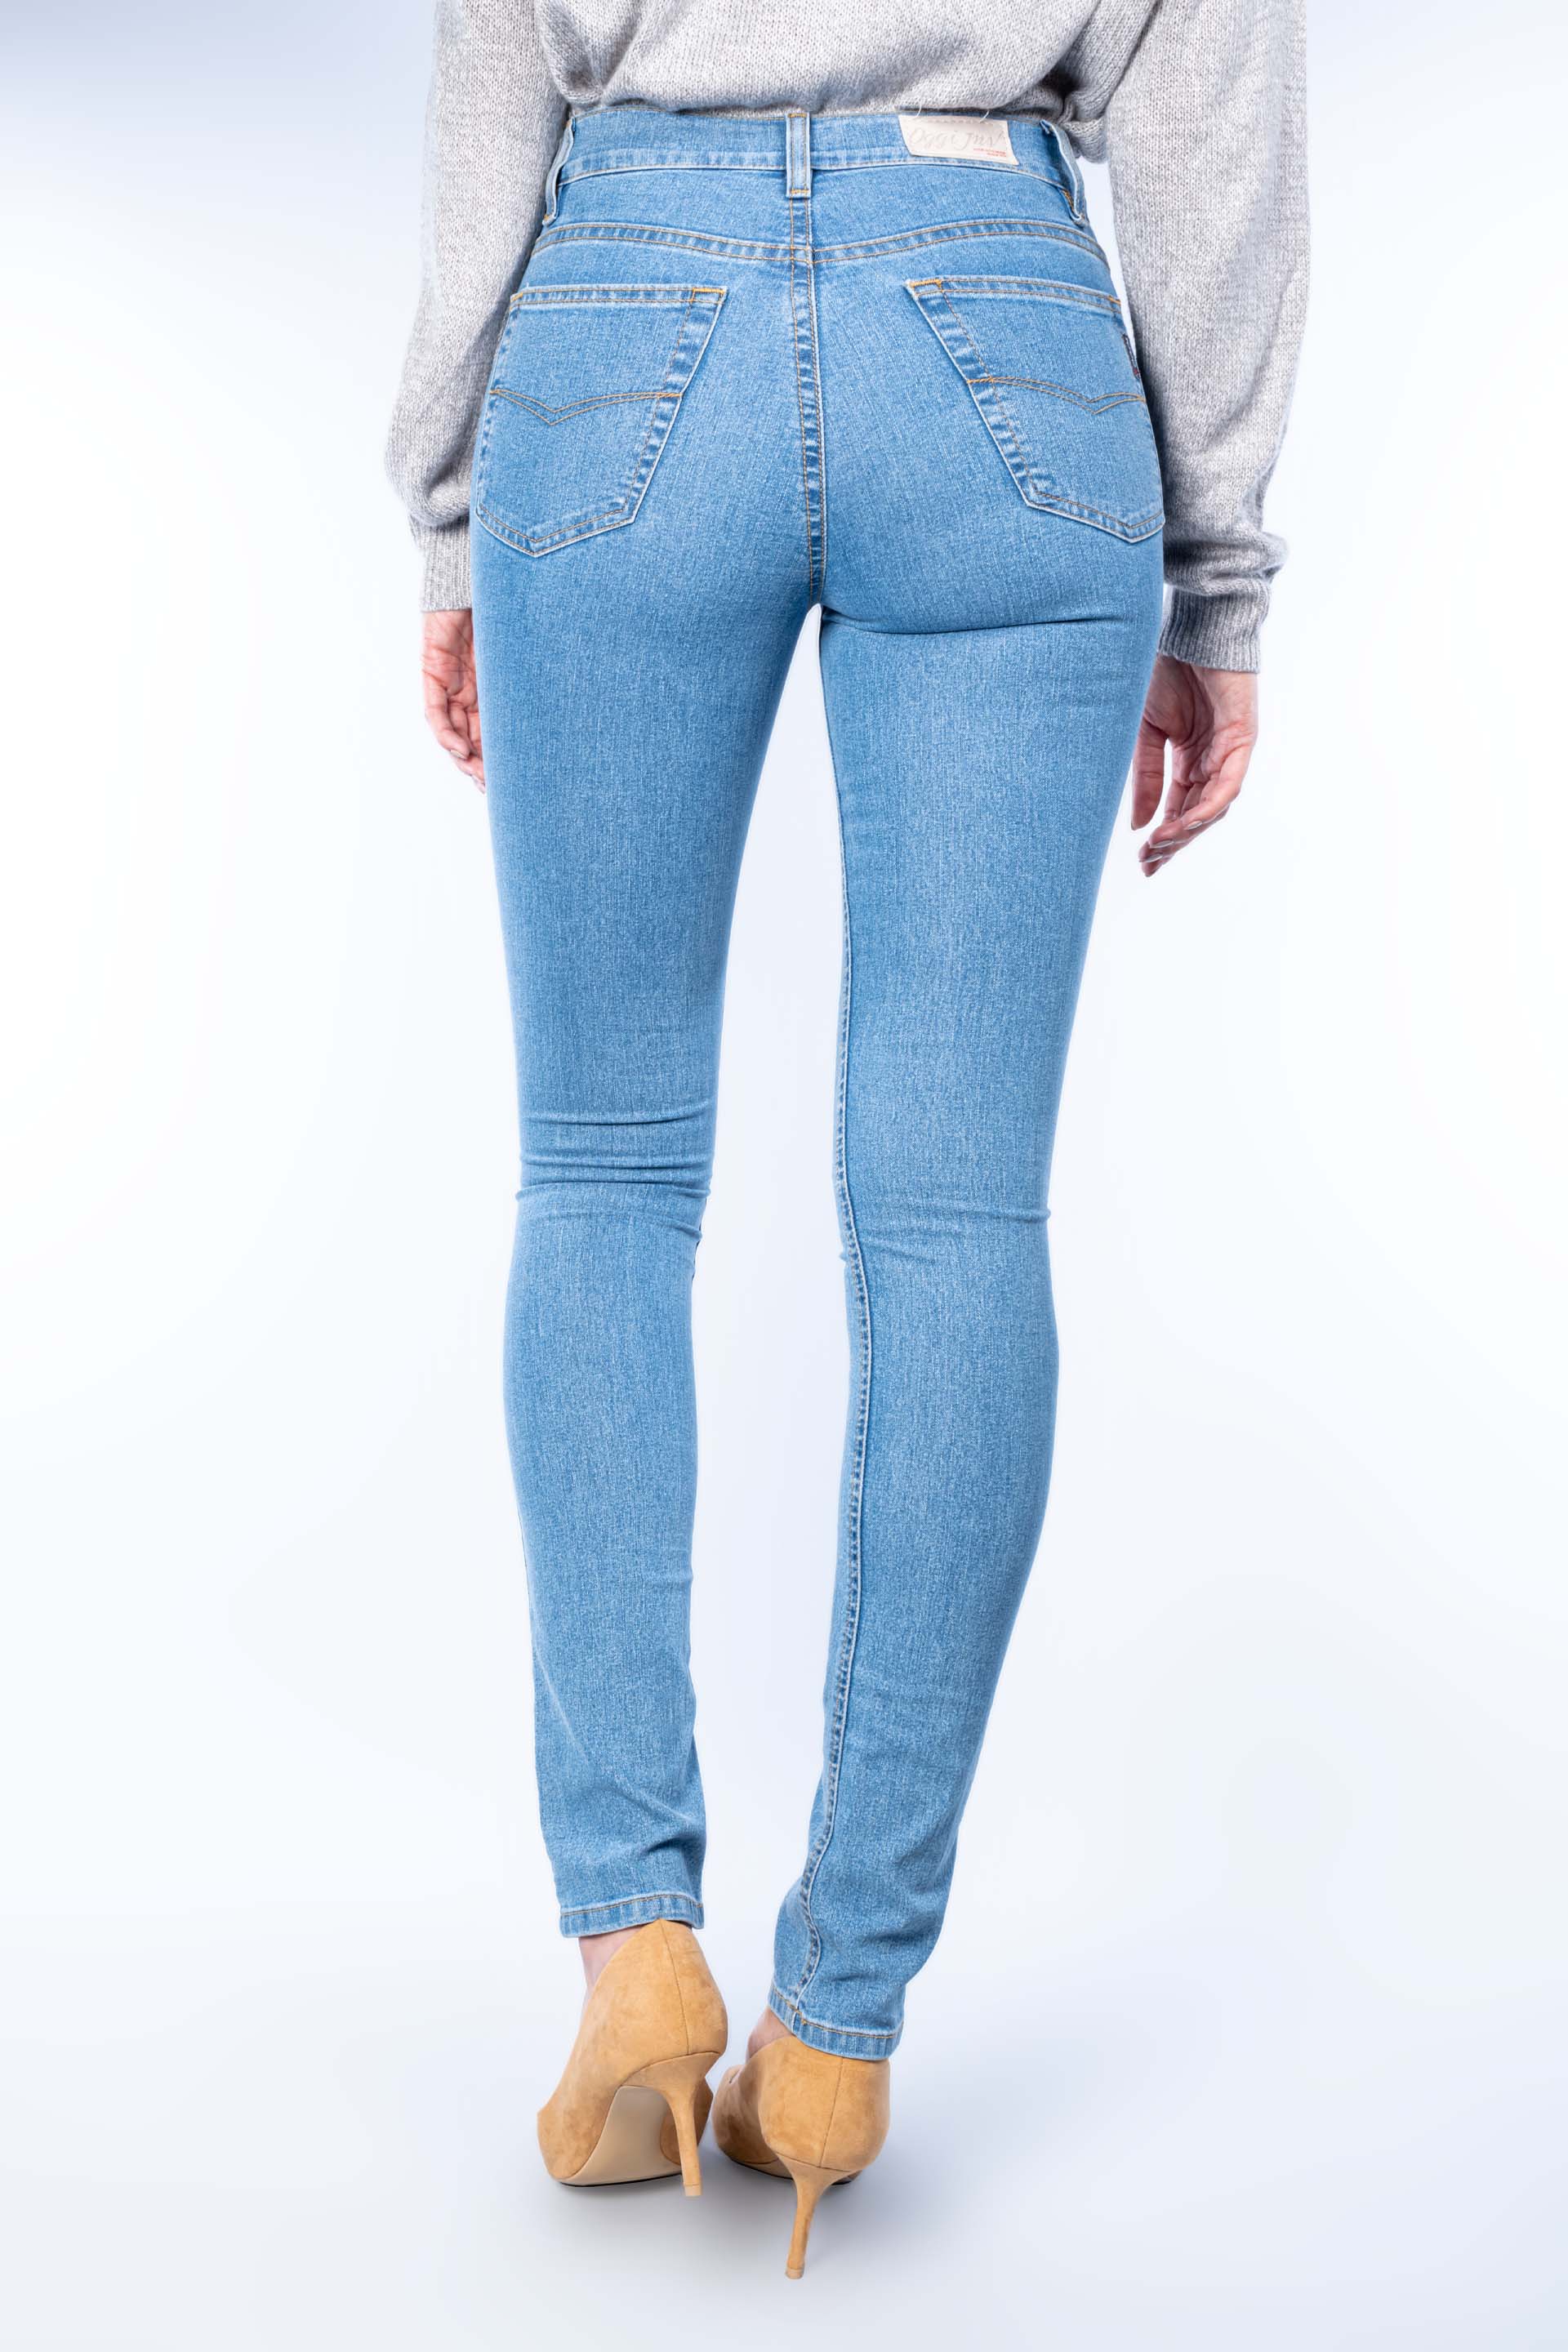 Pantalones de mujer azul claro Disponible $750